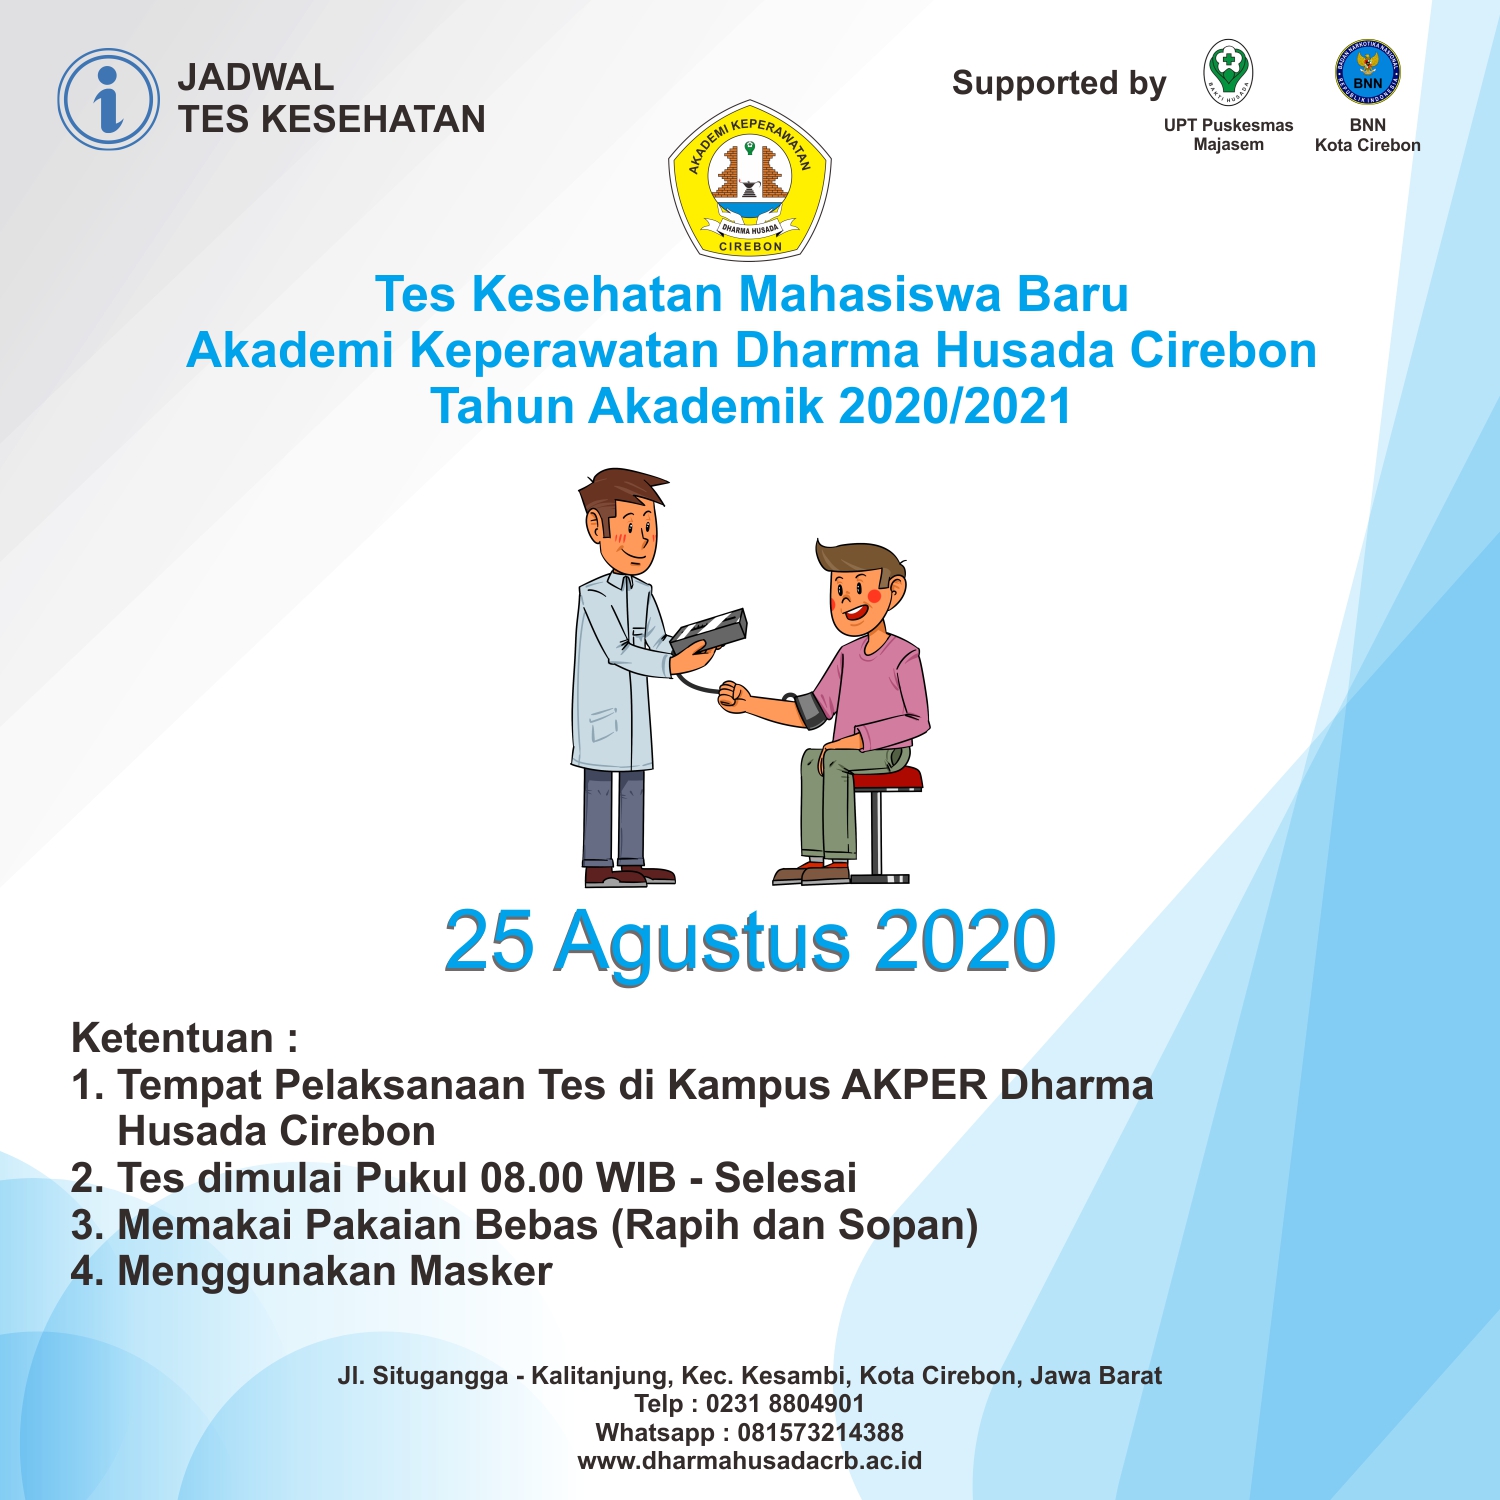 Jadwal Pelaksanaan Tes Kesehatan Mahasiswa Baru Tahun Akademik 2020/2021